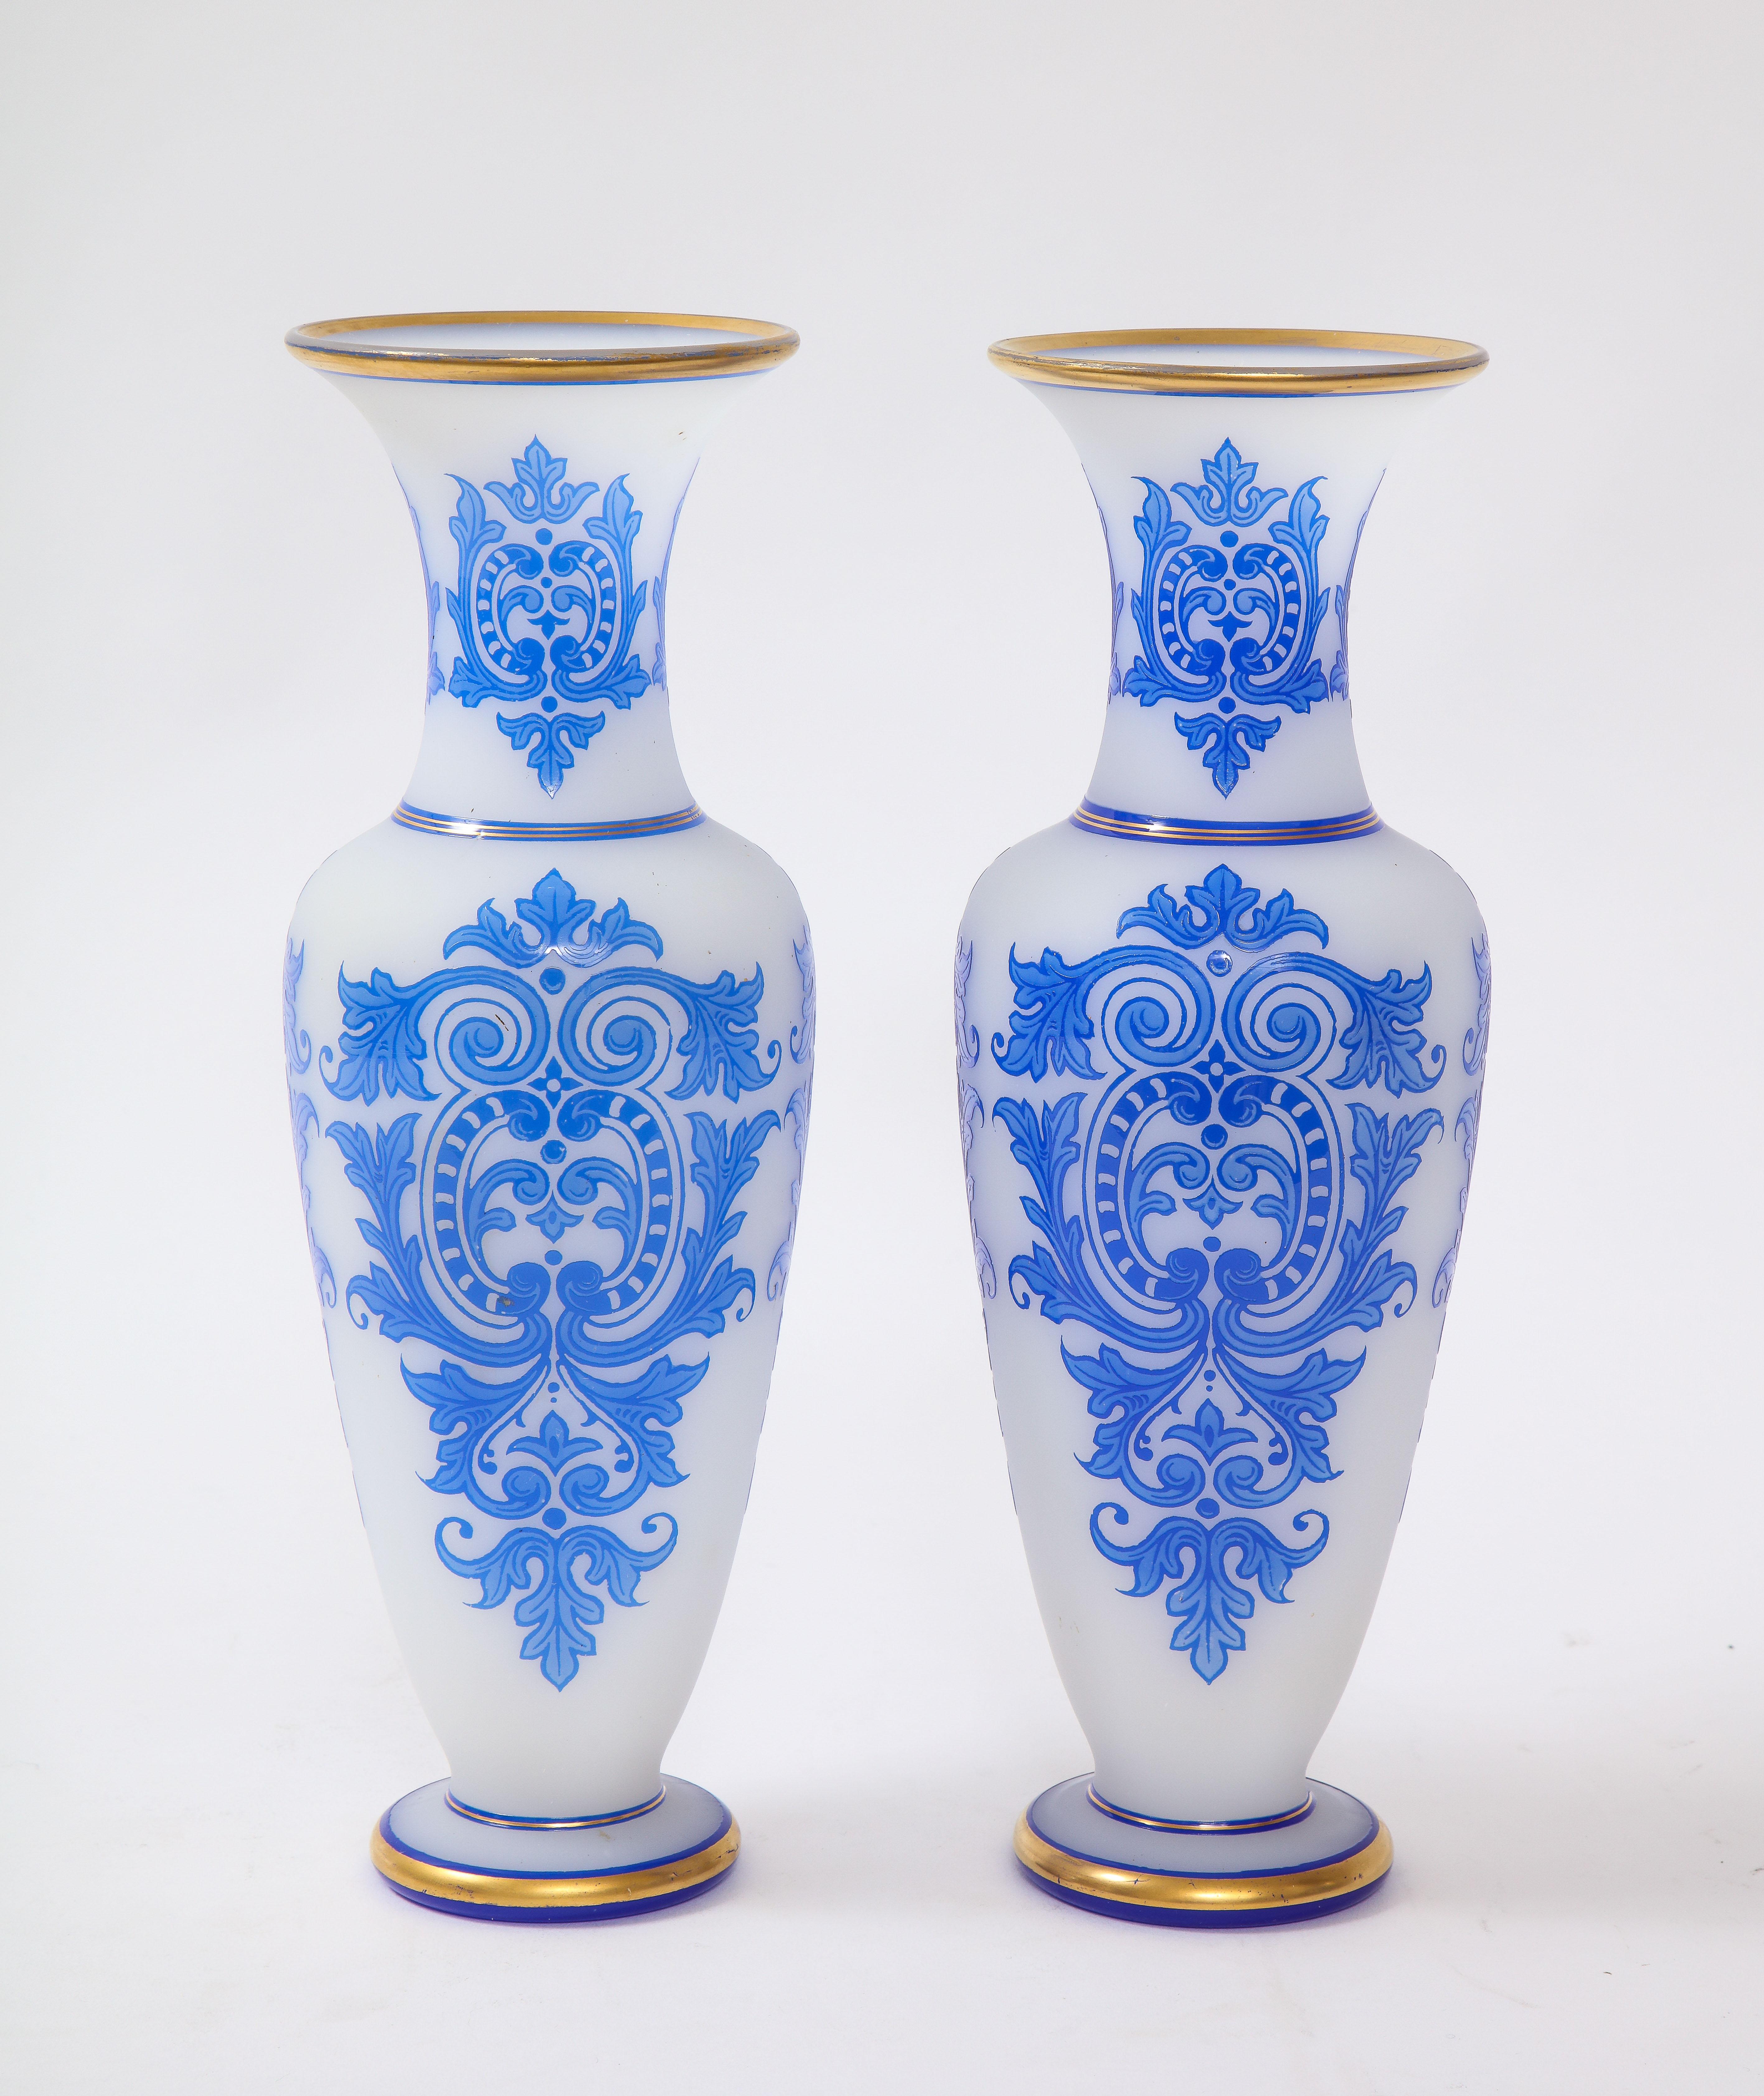 Ein fabelhaftes Paar Baccarat-Vasen im Louis-XVI-Stil aus dem 19. Jahrhundert mit doppeltem Überzug aus blauem und weißem Opalin mit handgemaltem 24-karätigem Golddekor. Jede Vase hat eine schlanke Form mit weißem, opalisierendem Grund und blauem